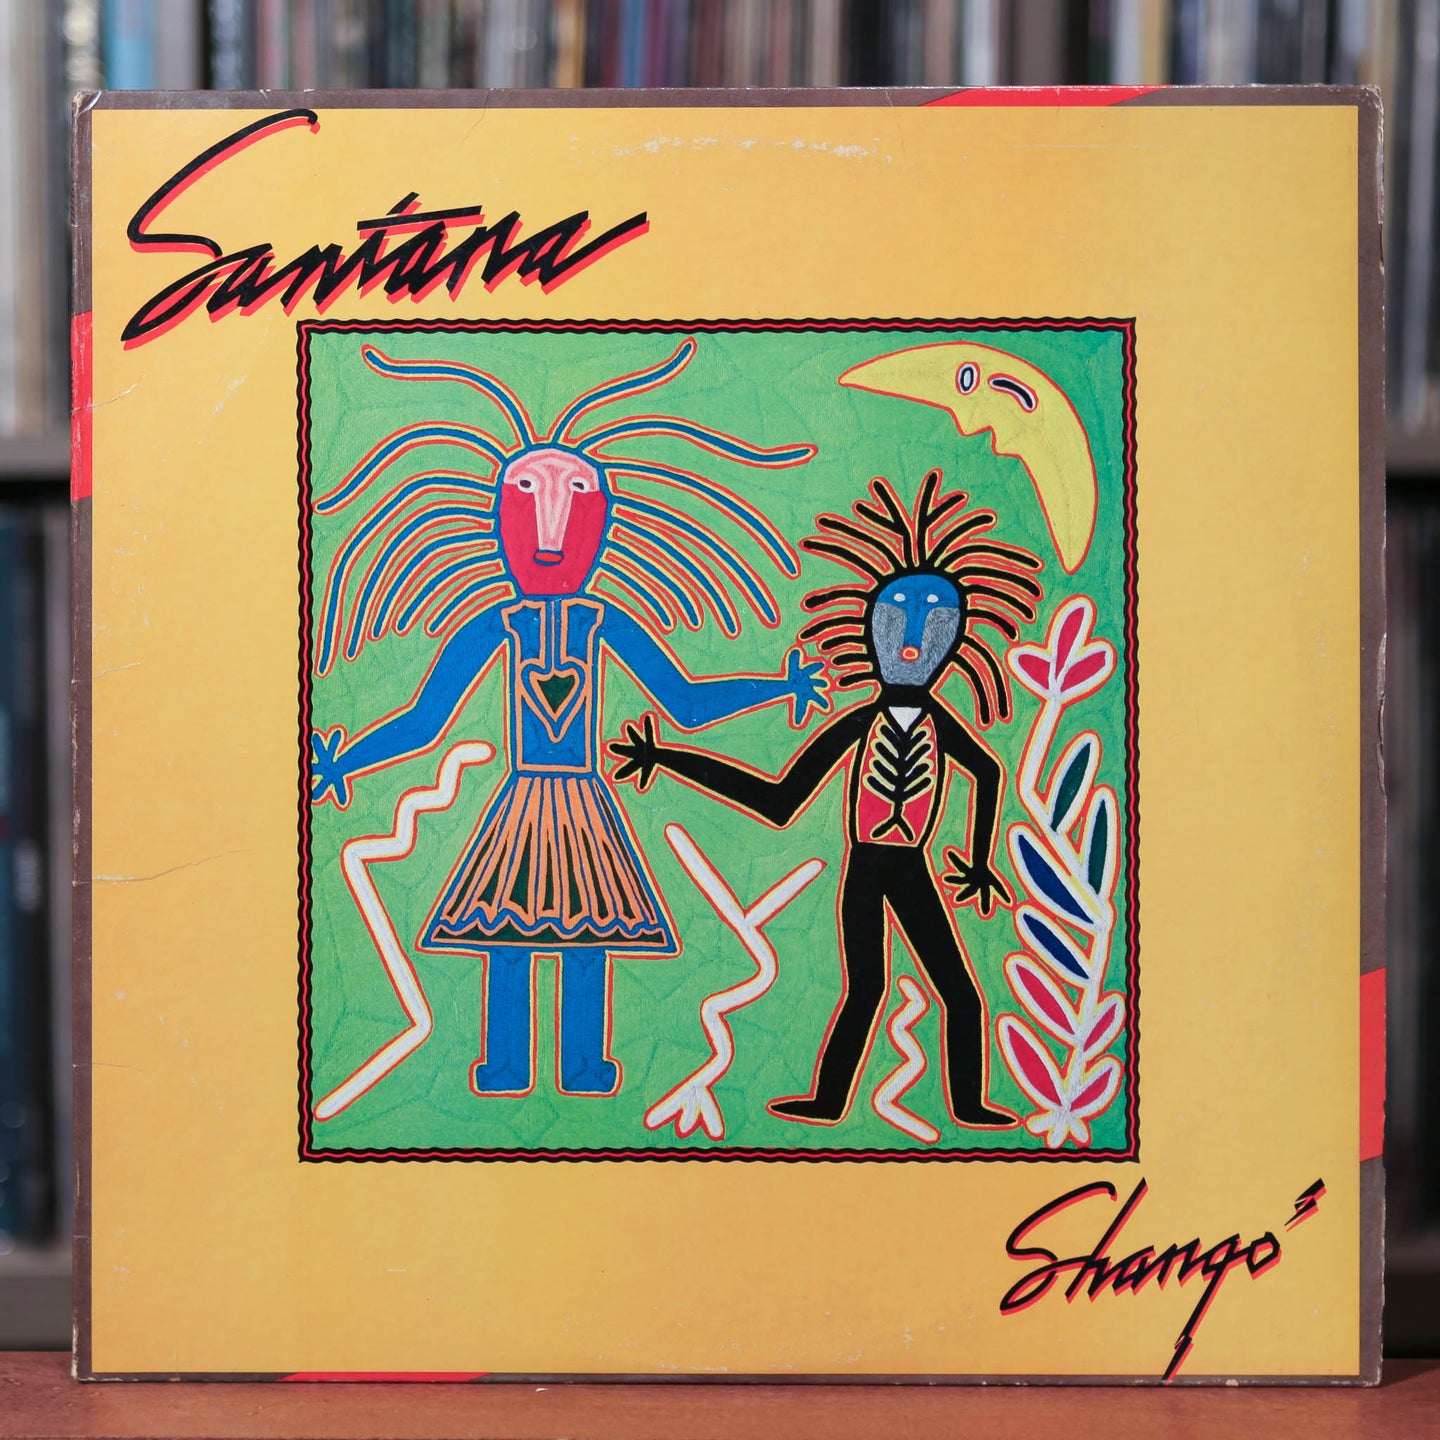 Santana - Shango - VG+/VG+